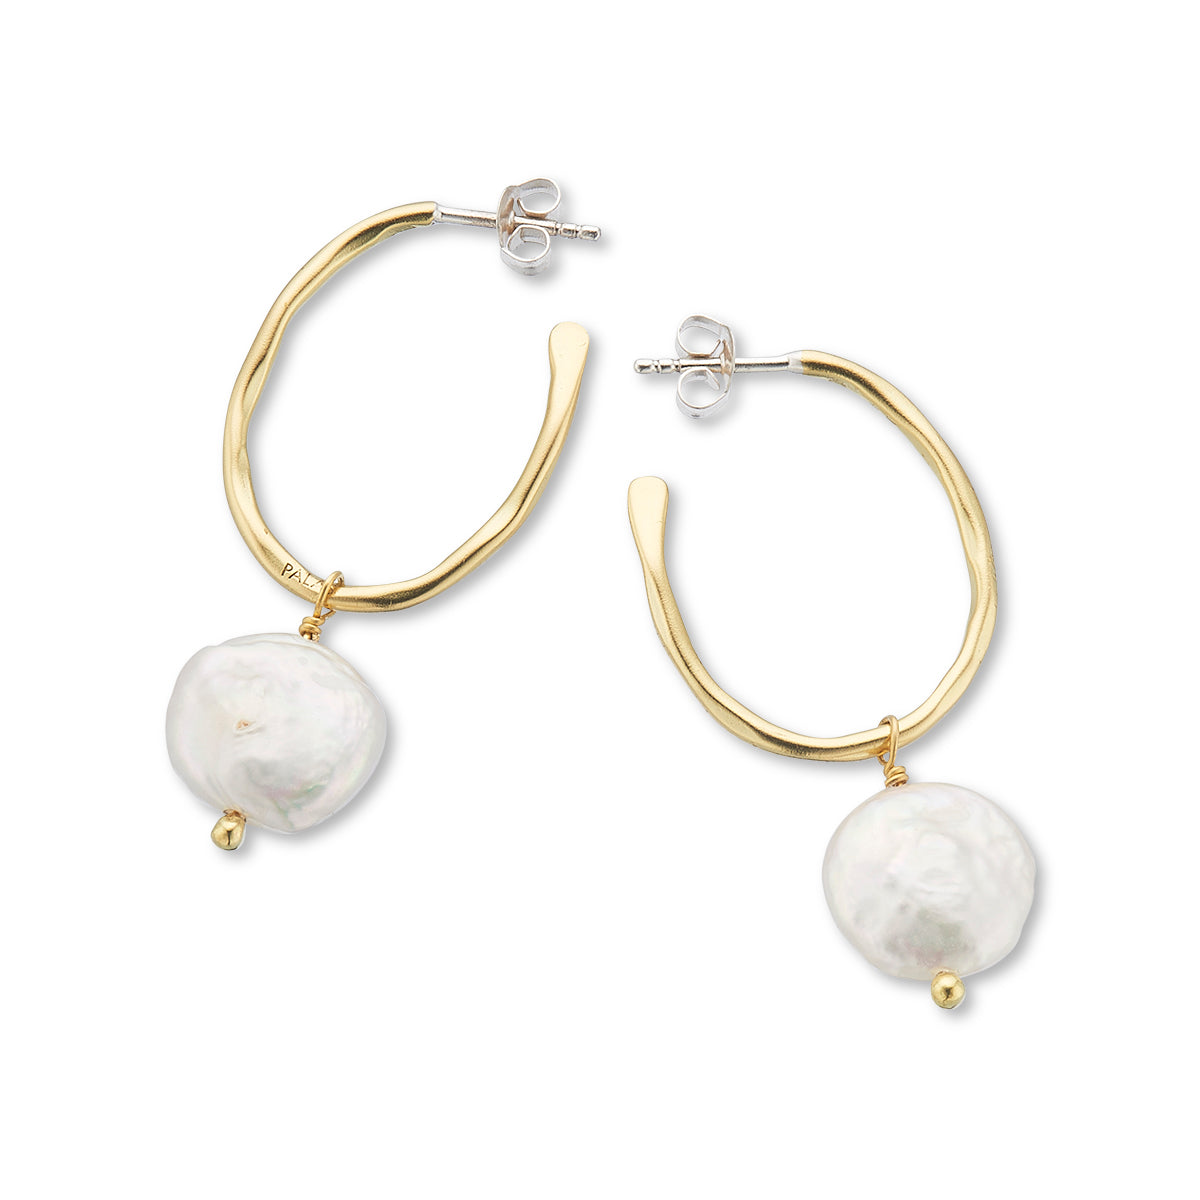 Prosperity pearl oval hoop earrings